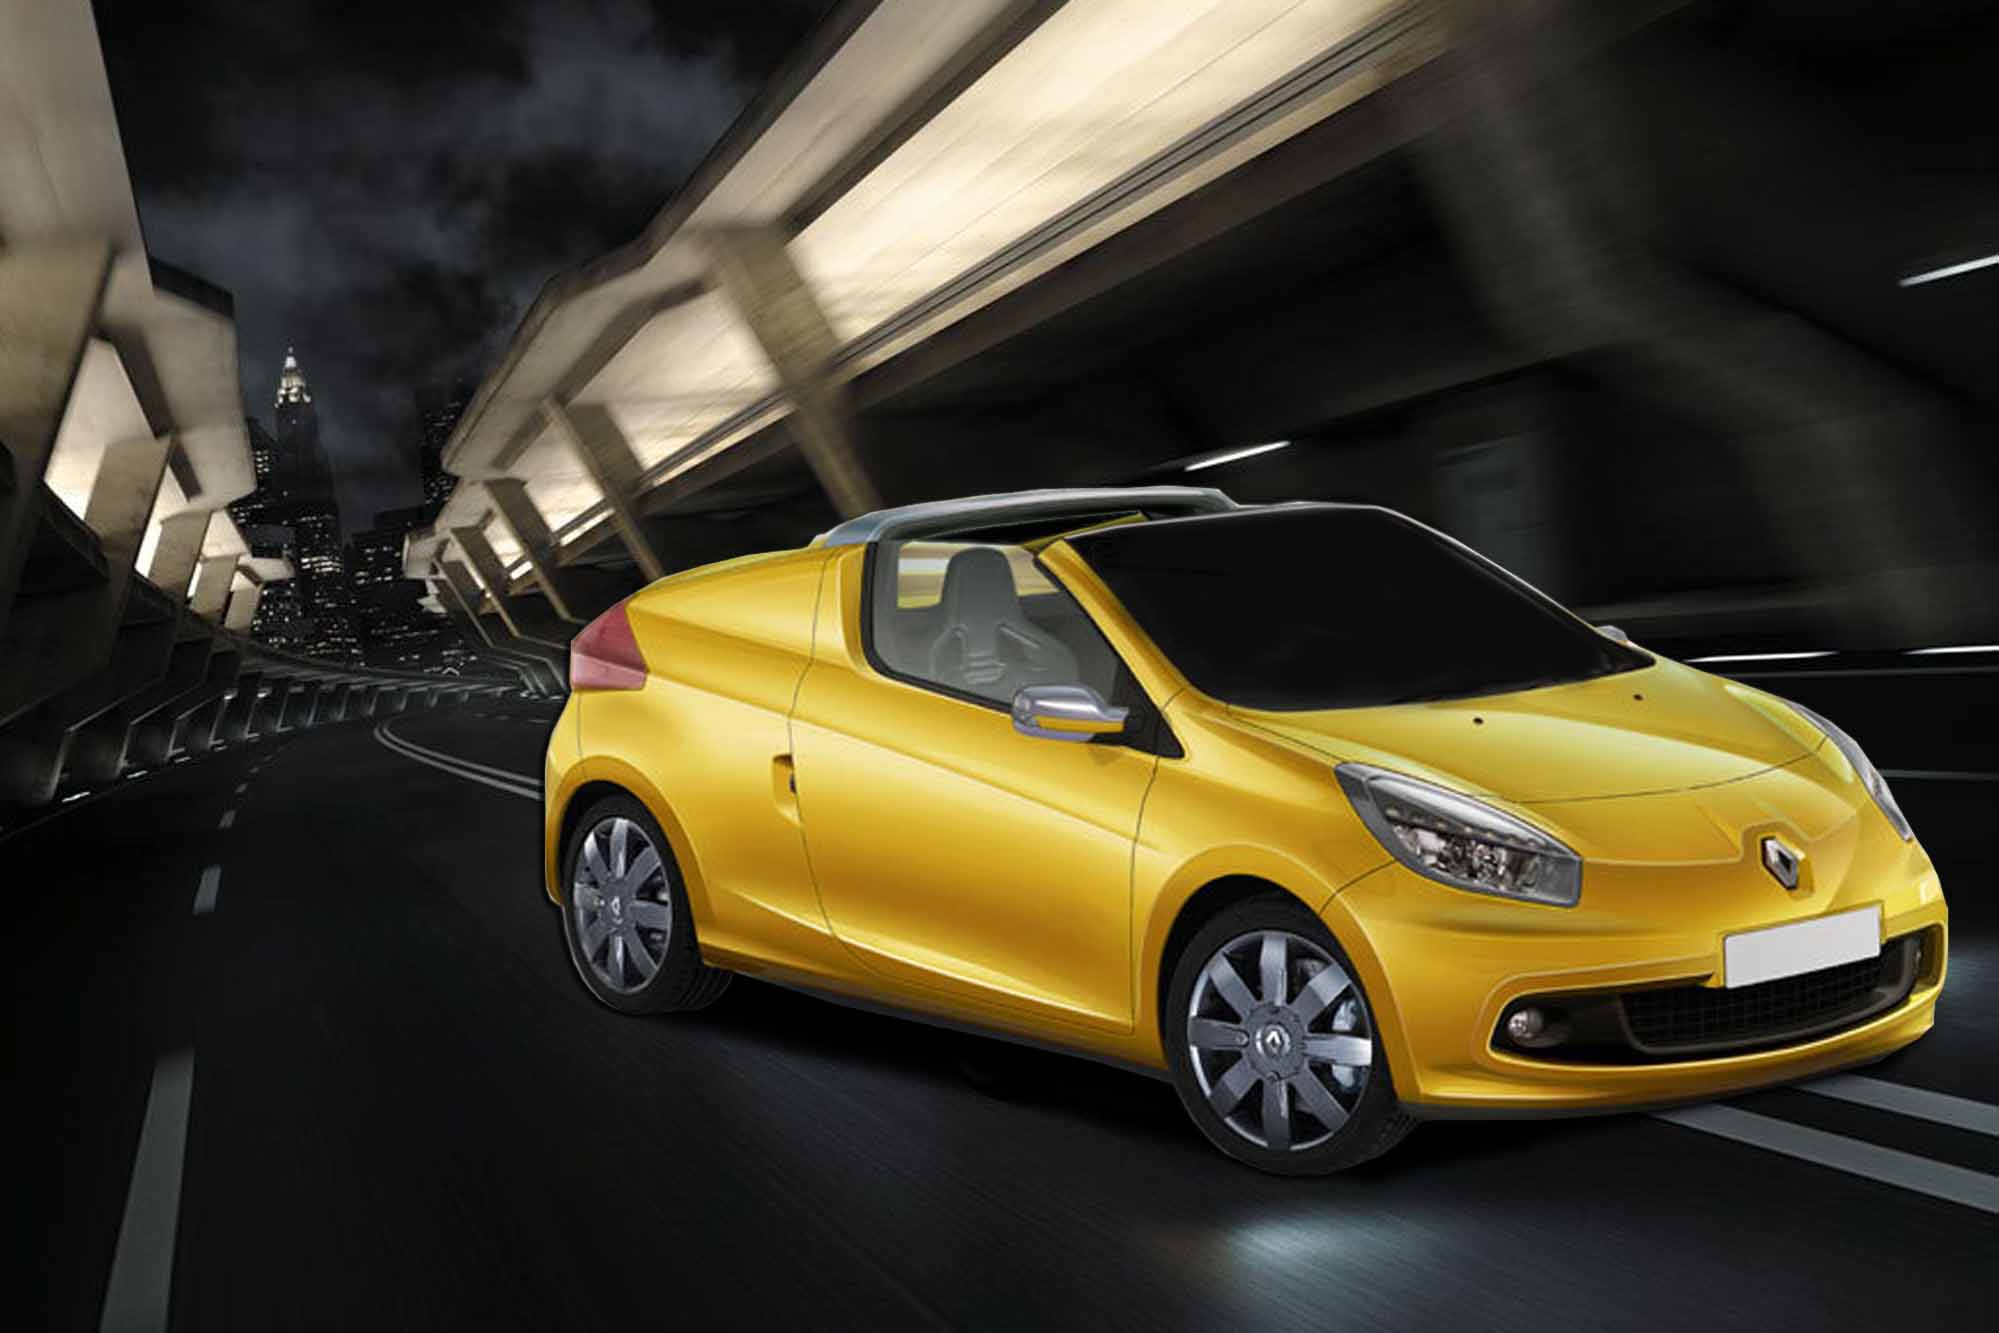 Image principale de l'actu: Renault twingo cc un coupe et cabriolet des villes 